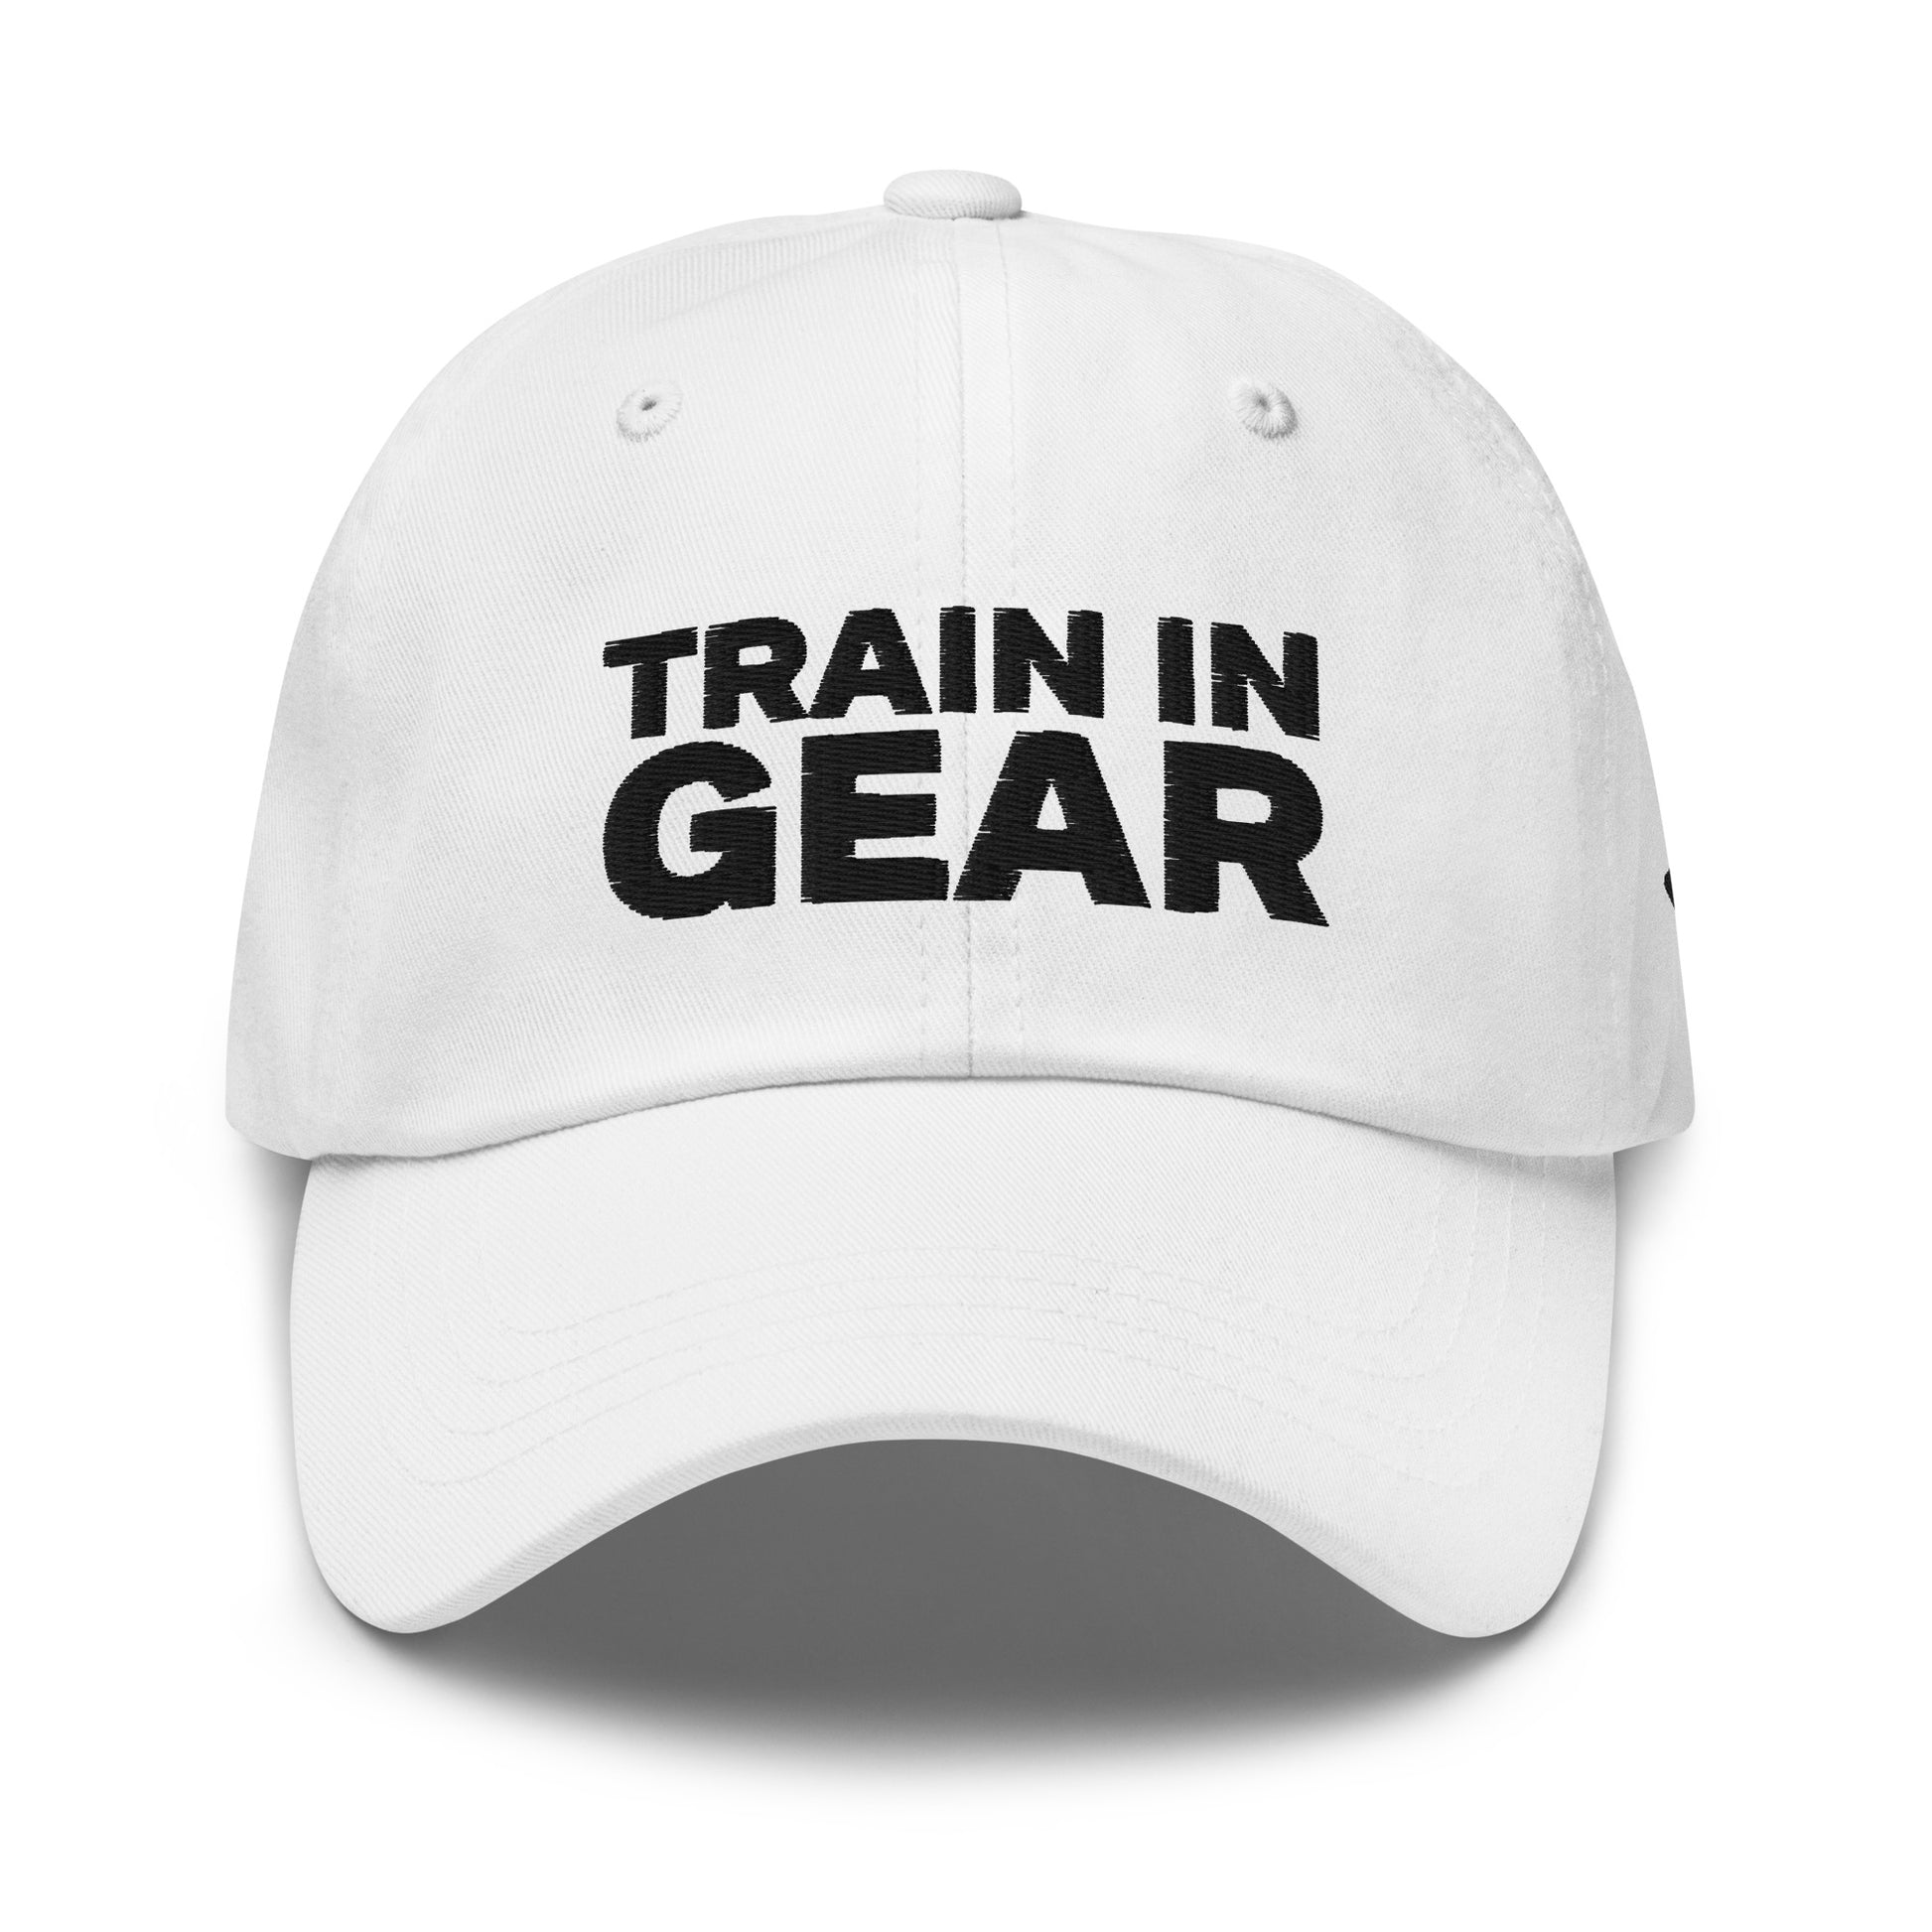 Train in Gear Firefighter hat. White baseball hat.